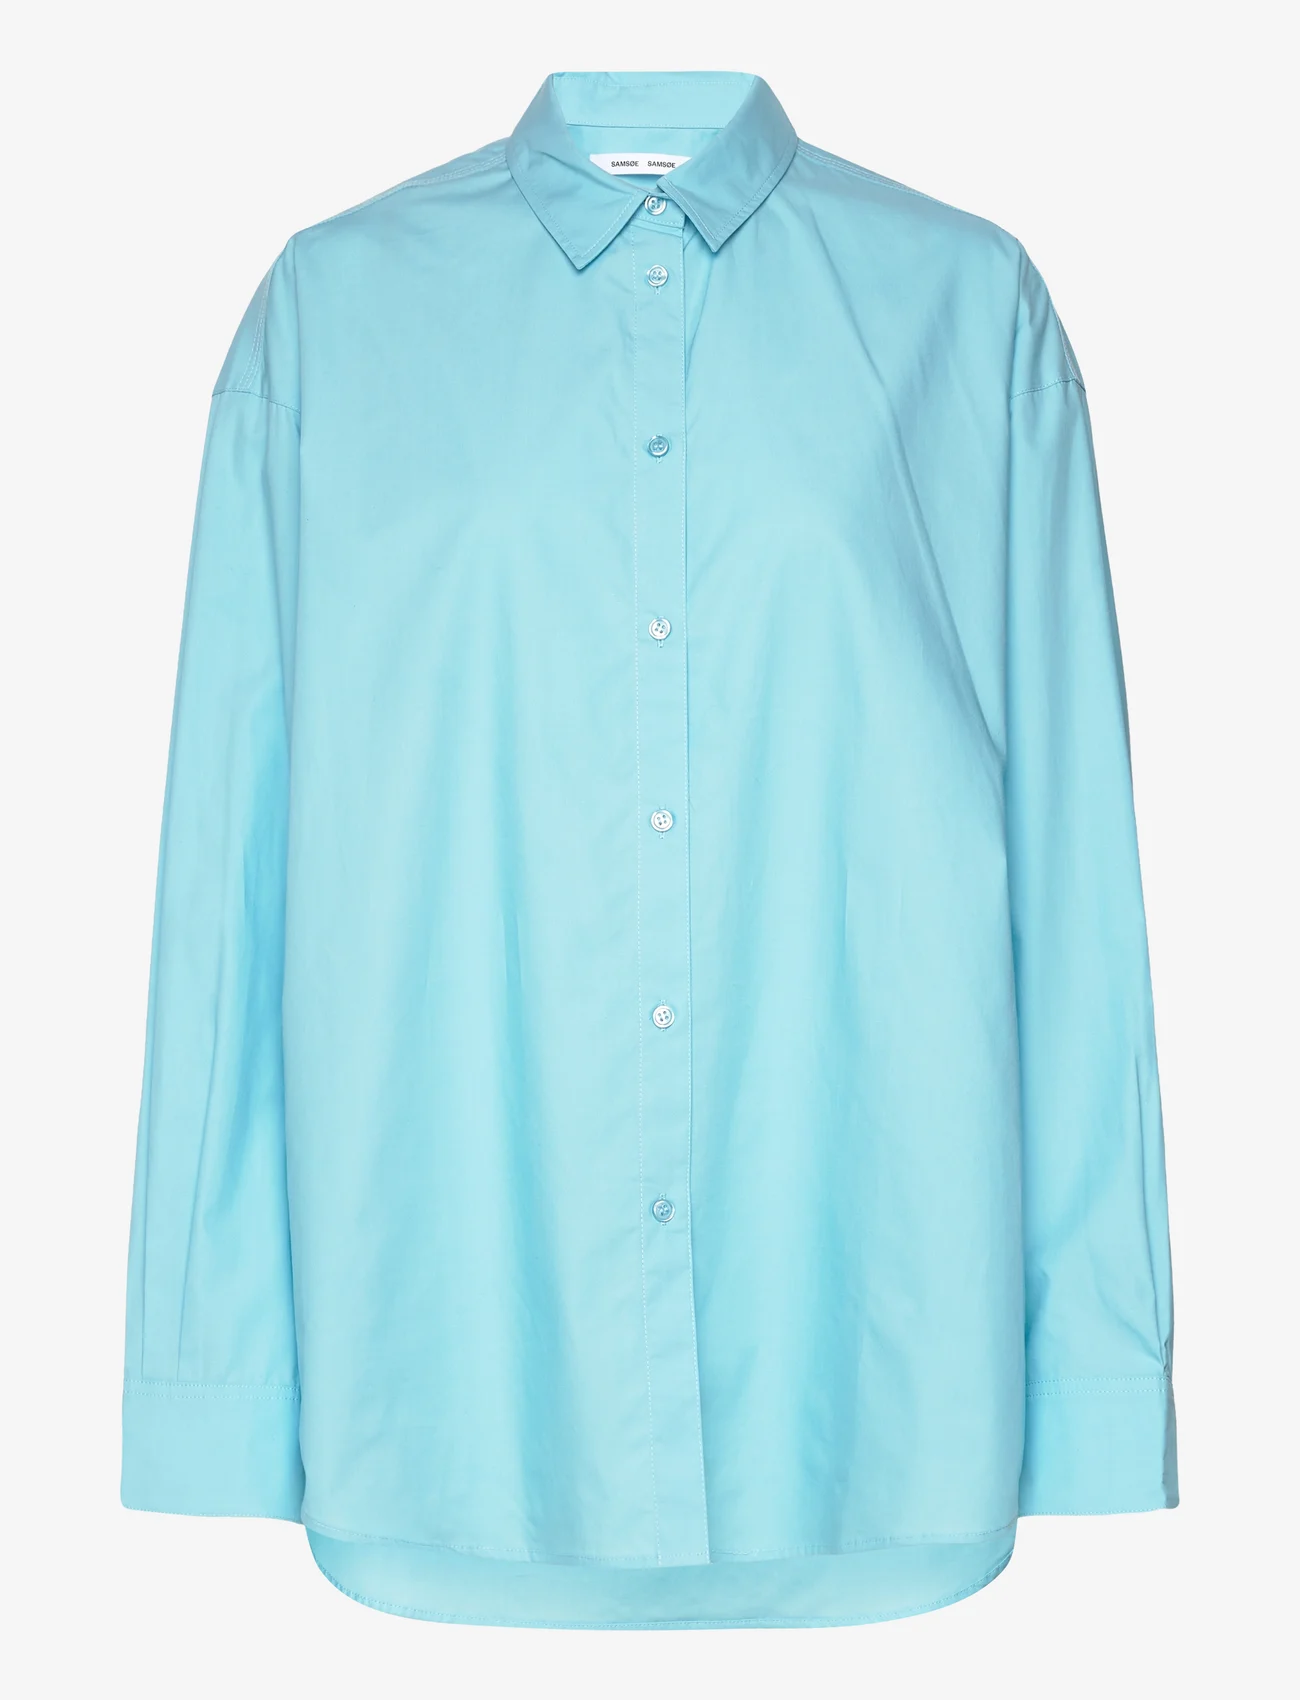 Samsøe Samsøe - Lua np shirt 14644 - langærmede skjorter - blue topaz - 0